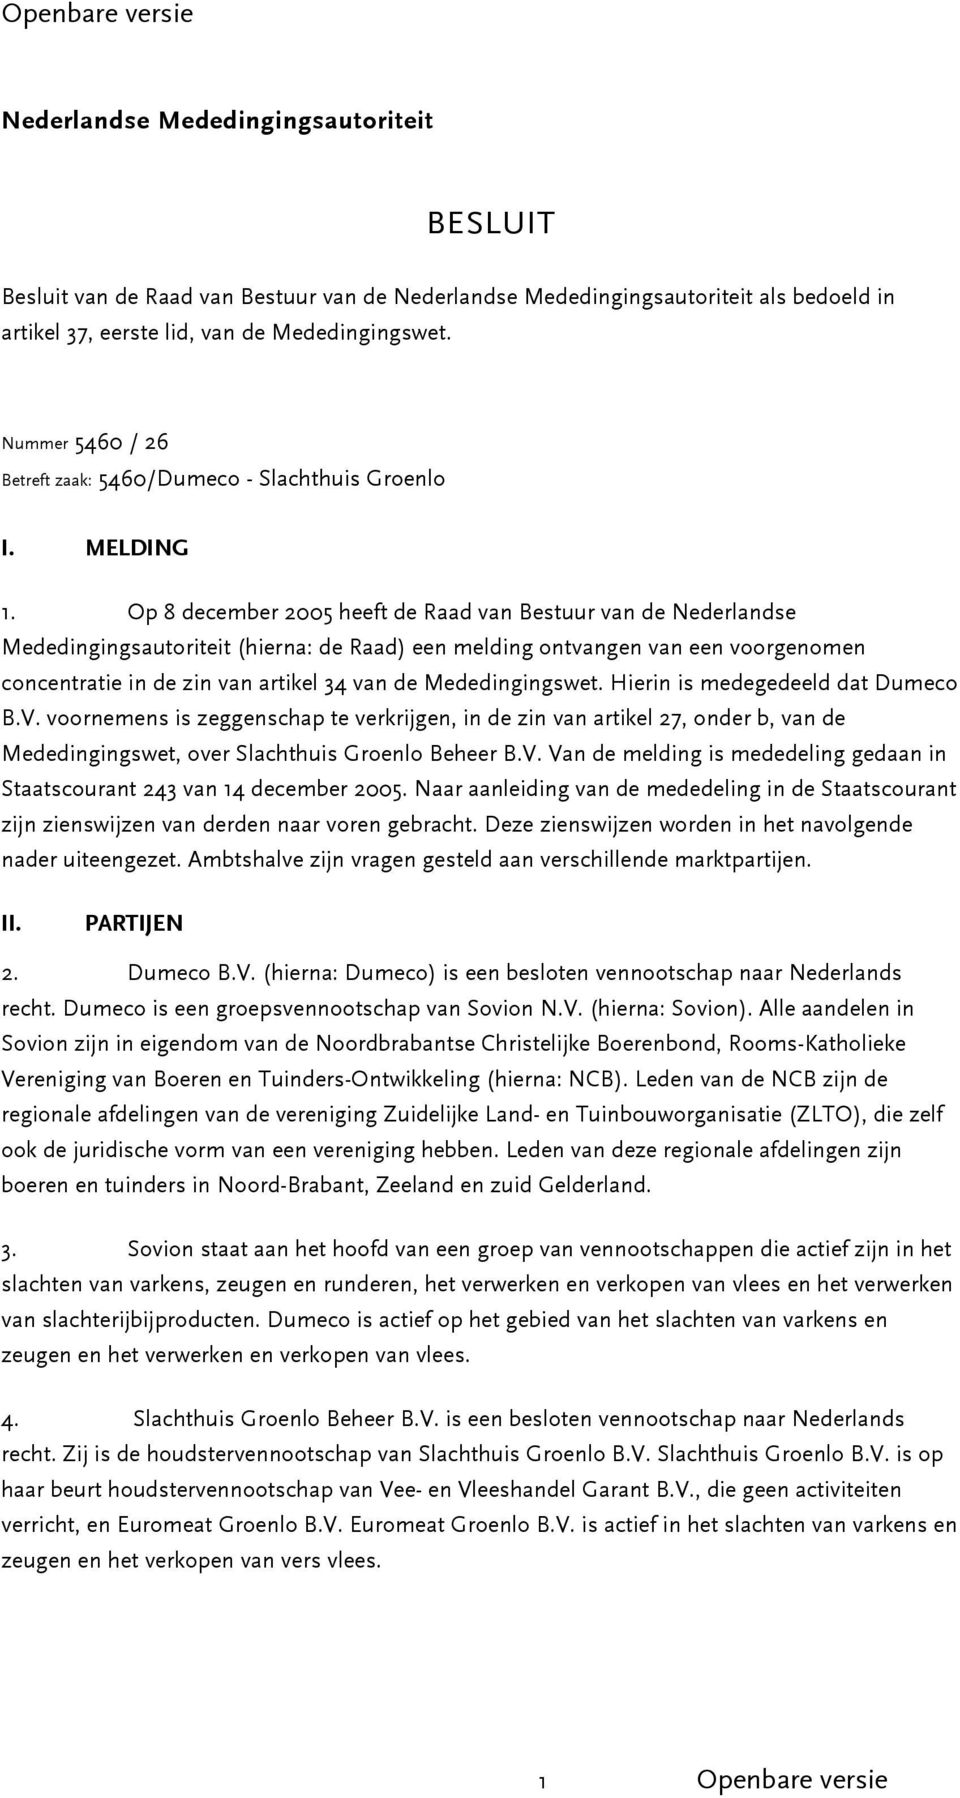 Op 8 december 2005 heeft de Raad van Bestuur van de Nederlandse Mededingingsautoriteit (hierna: de Raad) een melding ontvangen van een voorgenomen concentratie in de zin van artikel 34 van de